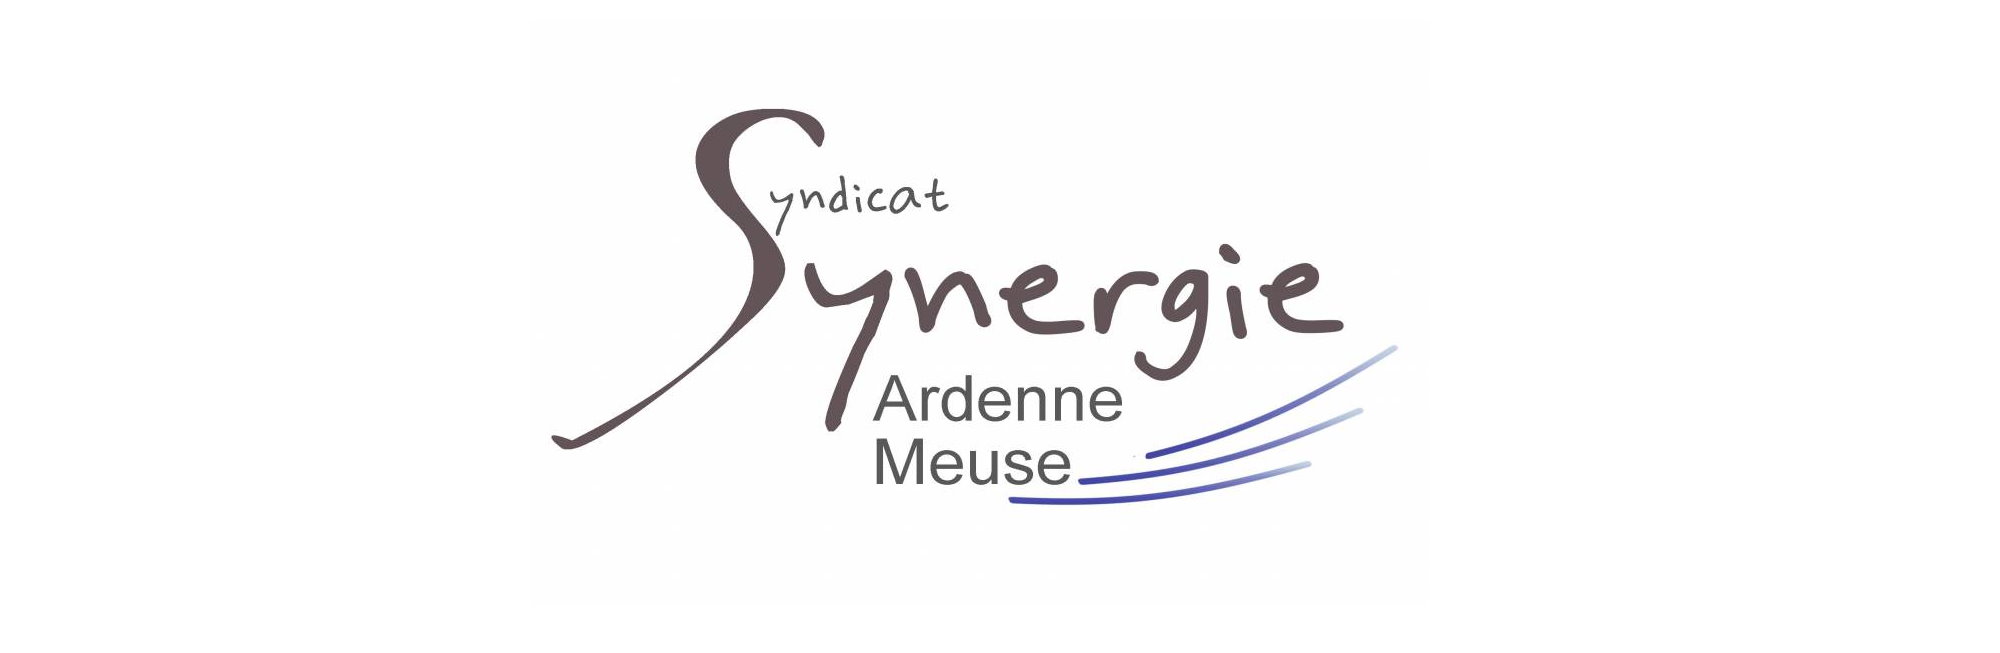 Synergie Ardenne Meuse